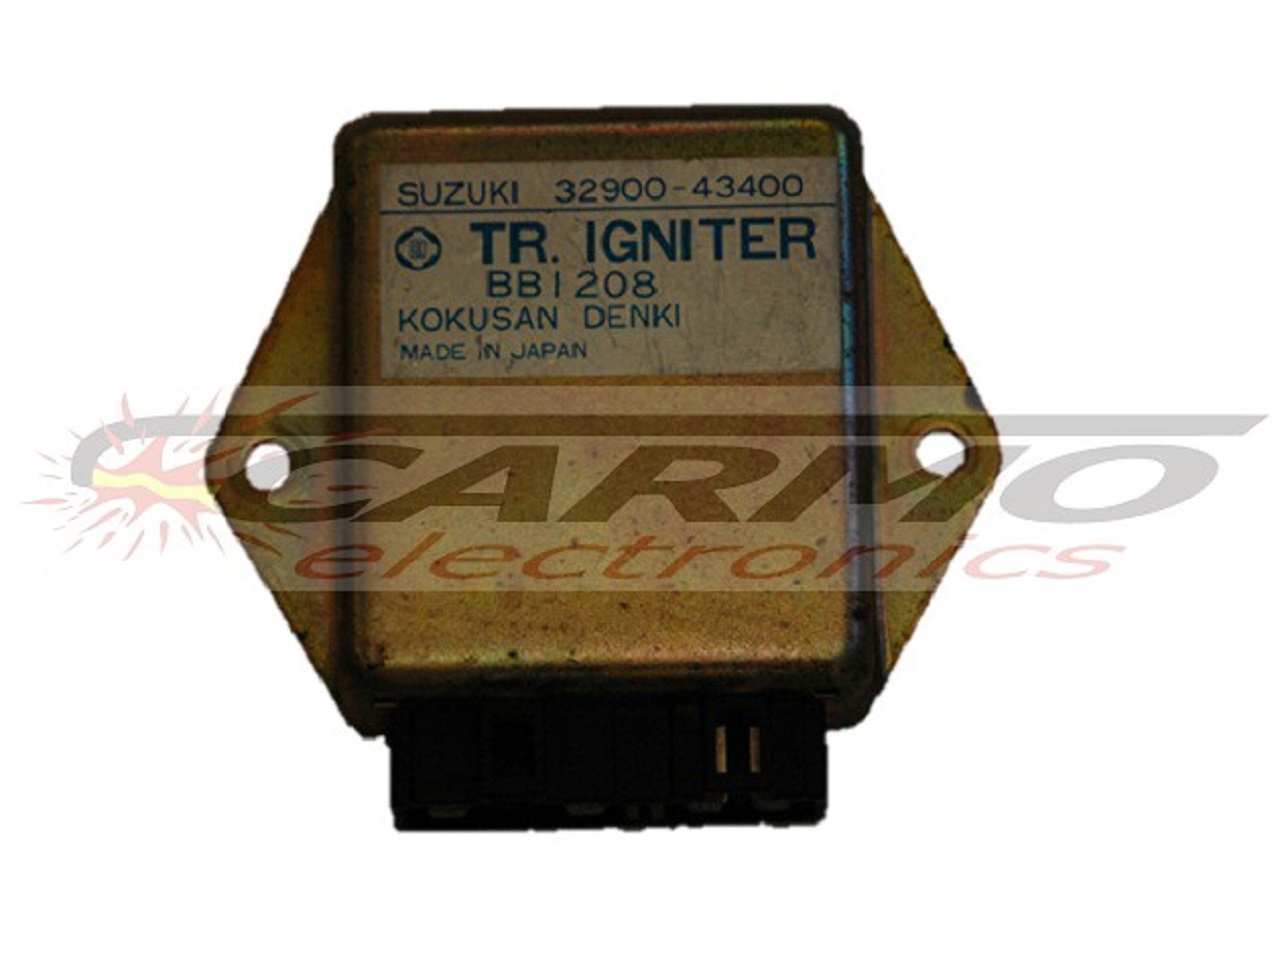 GSX550 GSX550ES GSX550EF igniter ignition module CDI TCI Box (32900-43400, BB1208)